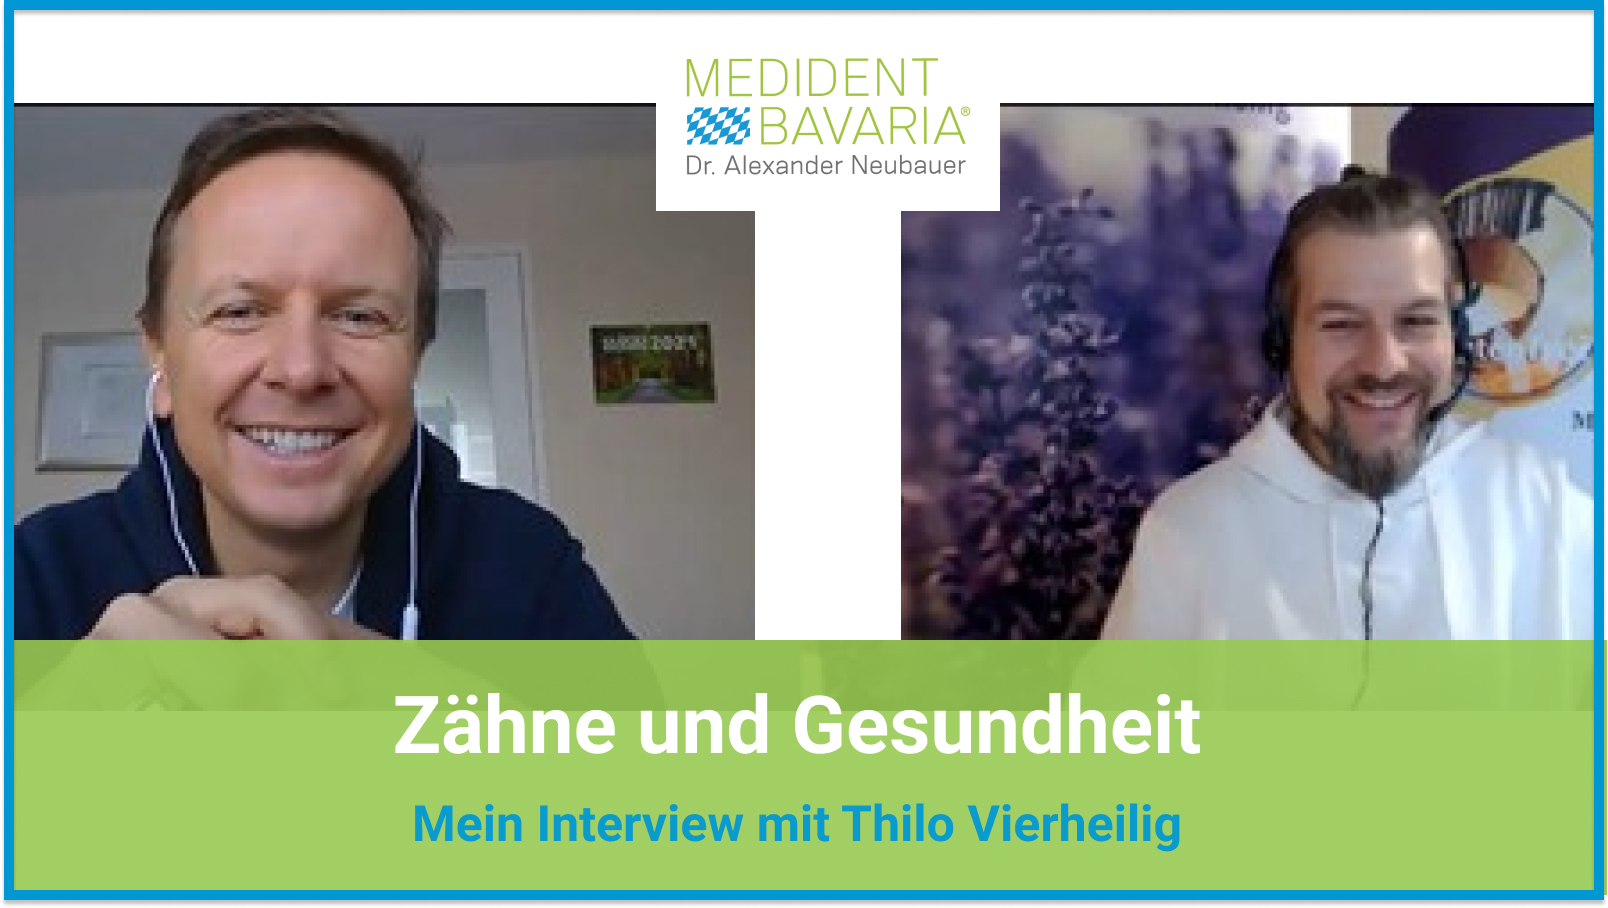 Zähne und Gesundheit - mein Interview mit Thilo Vierheilig